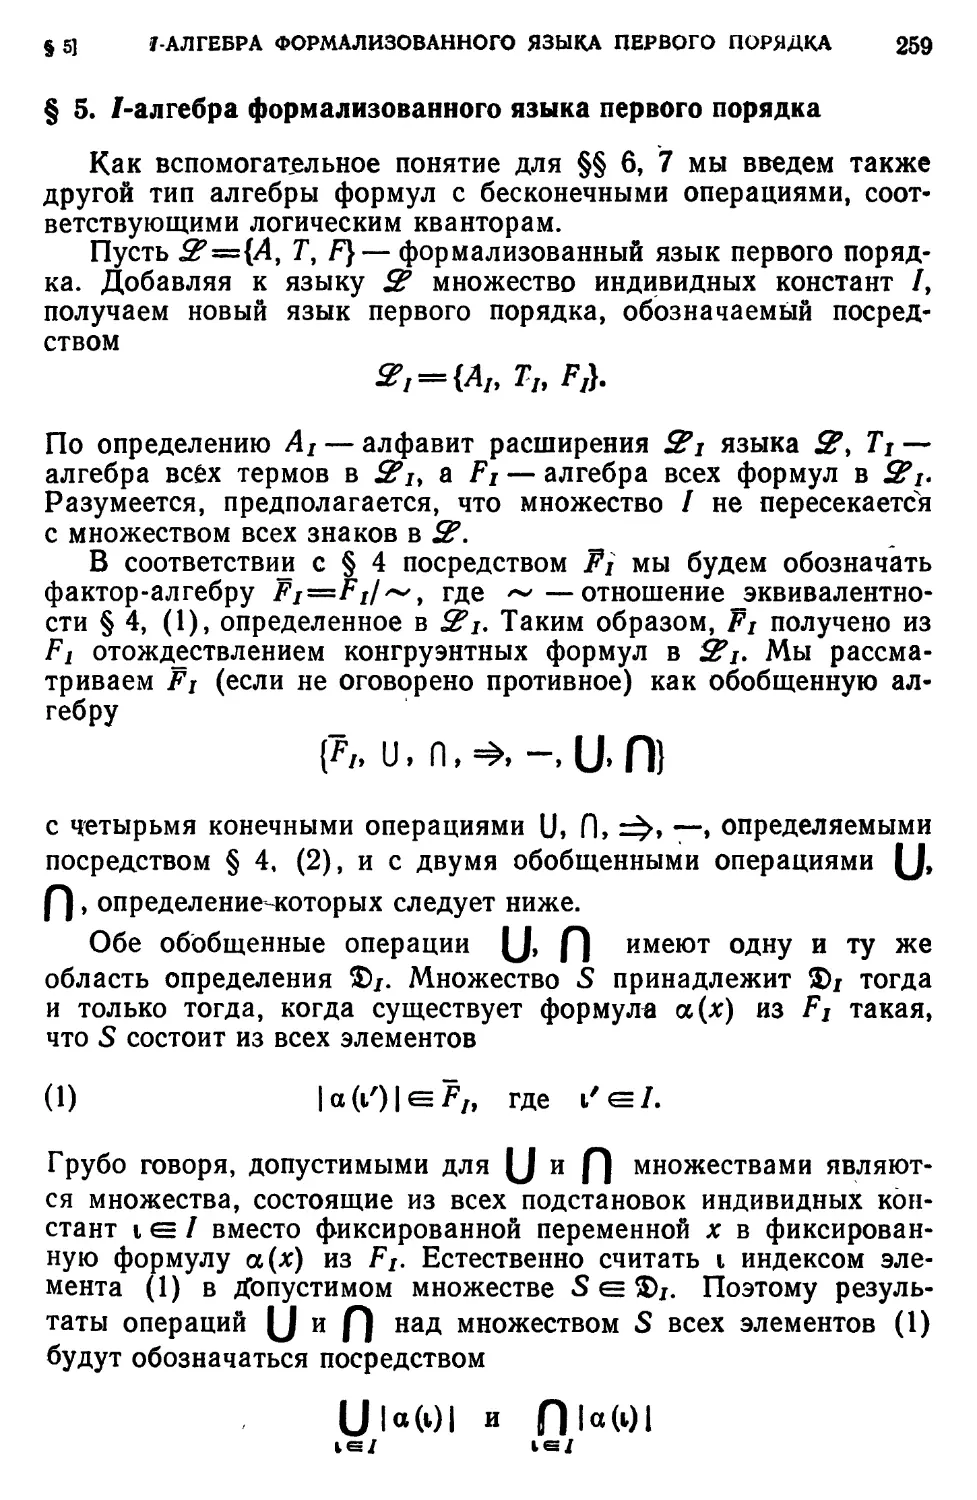 § 5. I-алгебра формализованного языка первого порядка